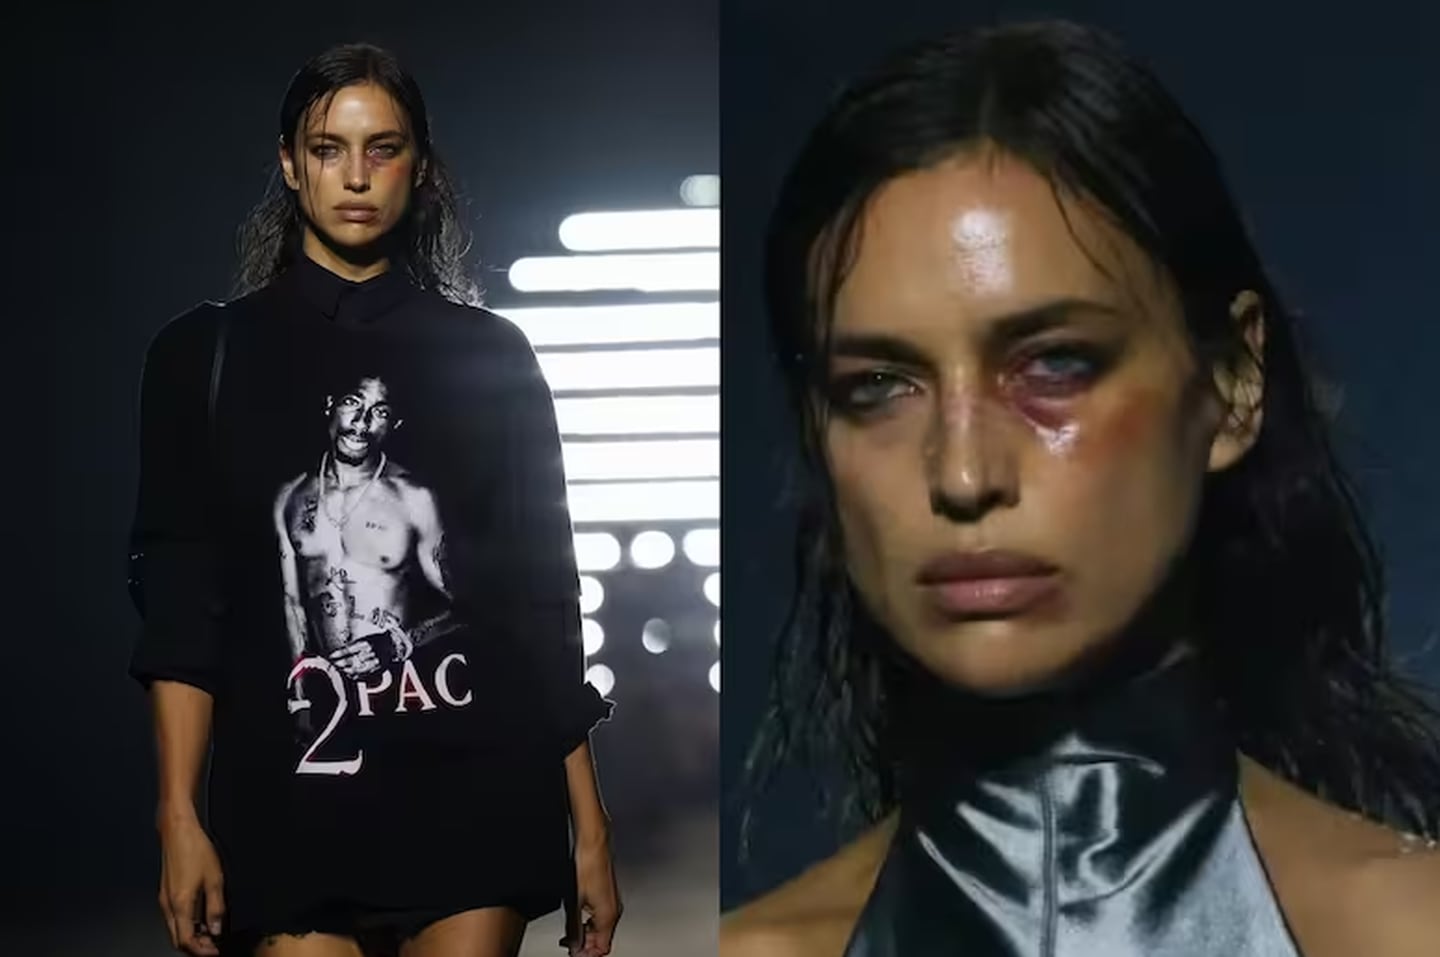 La modelo Irina Shayk levantó todo tipo de críticas por desfilar en la Semana de la Moda de Londres maquillada como si tuviera un ojo morado.